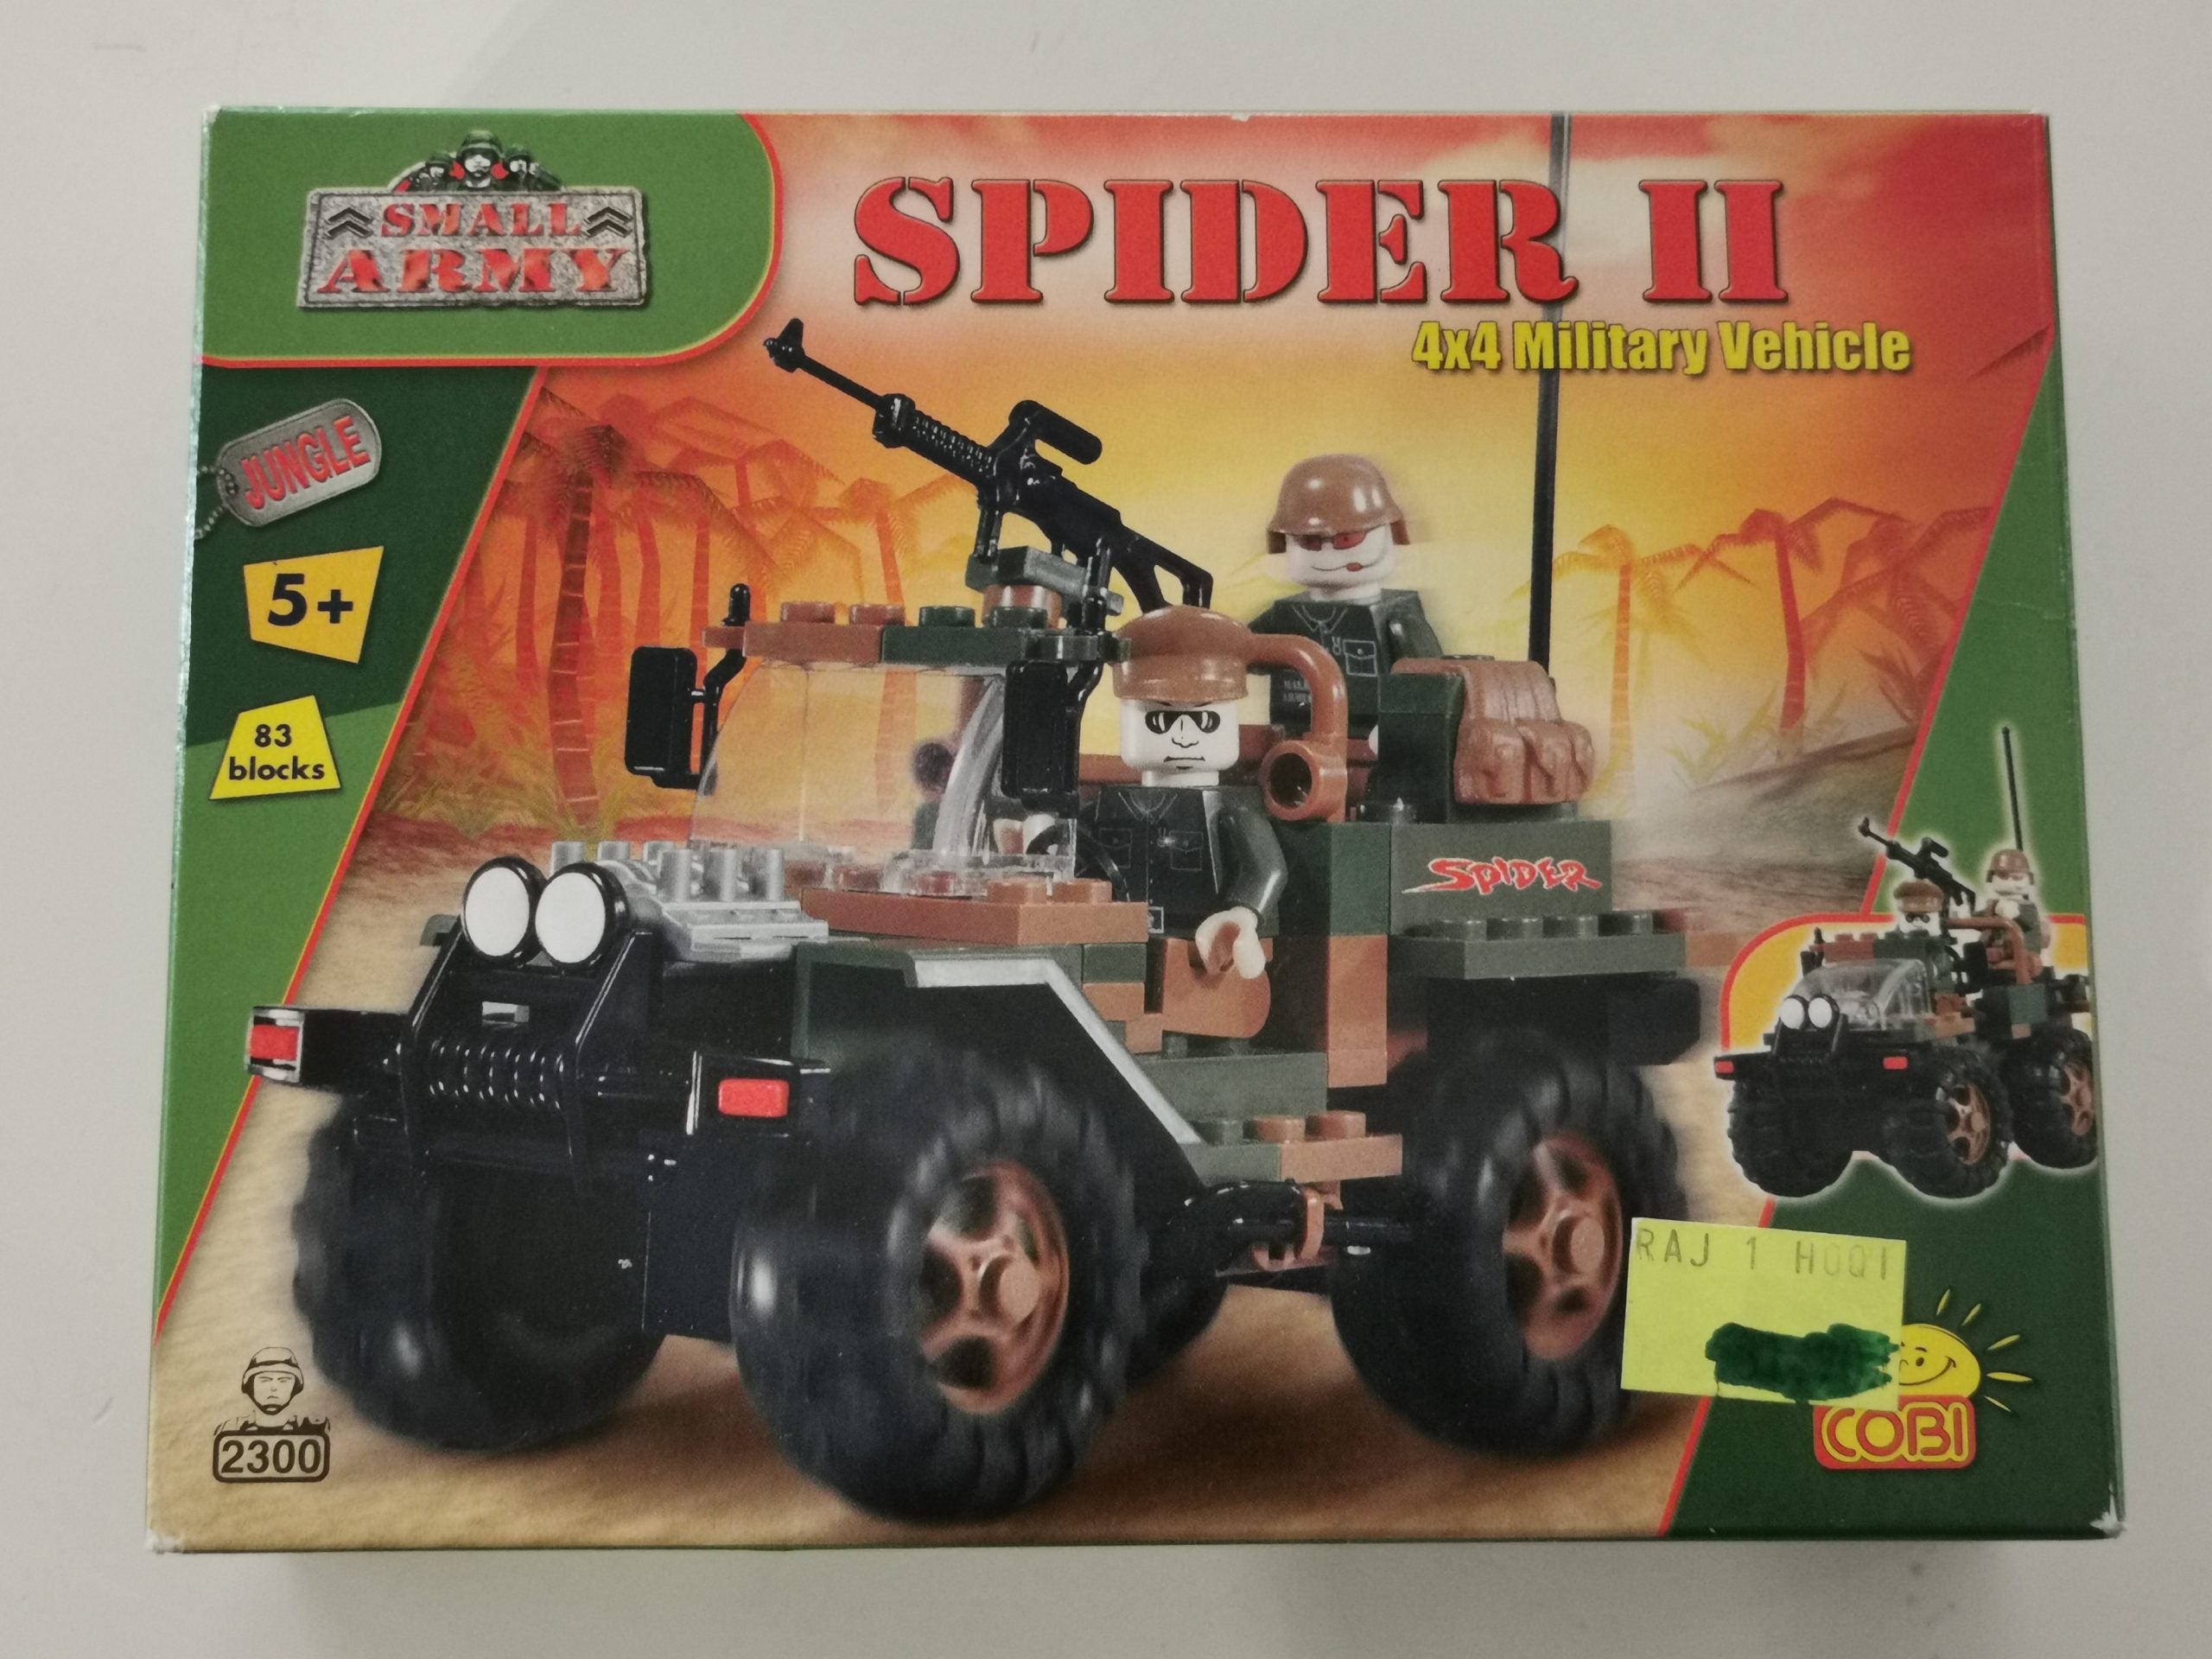 Cobi 2300 Spider II 4x4 Military Vehicle gebraucht